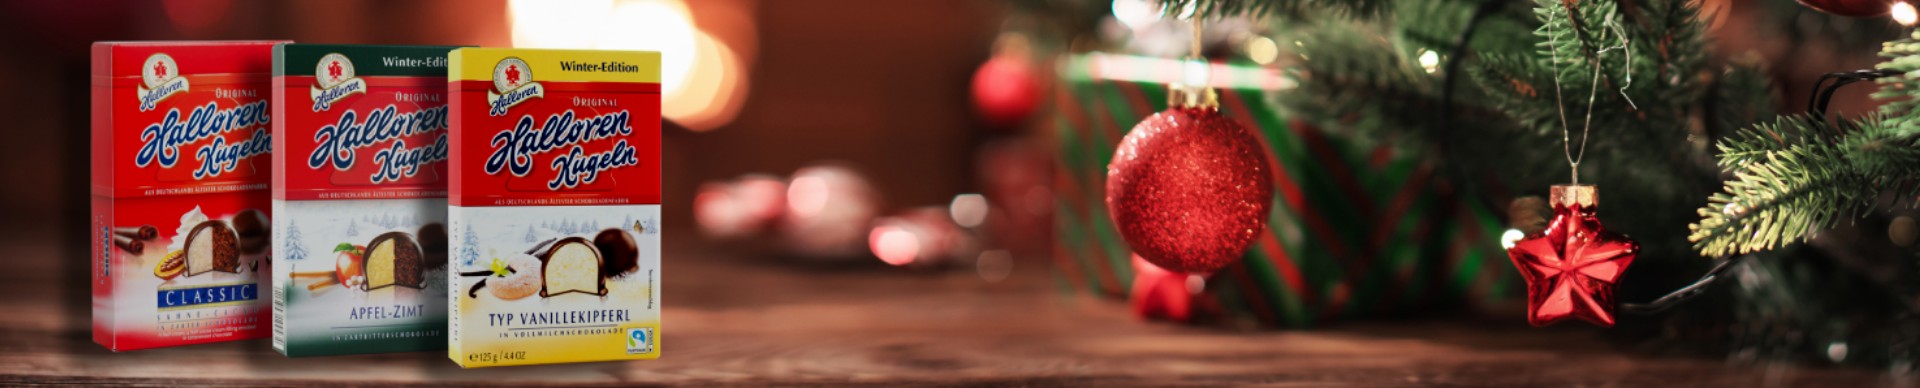 media/image/halloren-schokolade-weihnachten.jpg